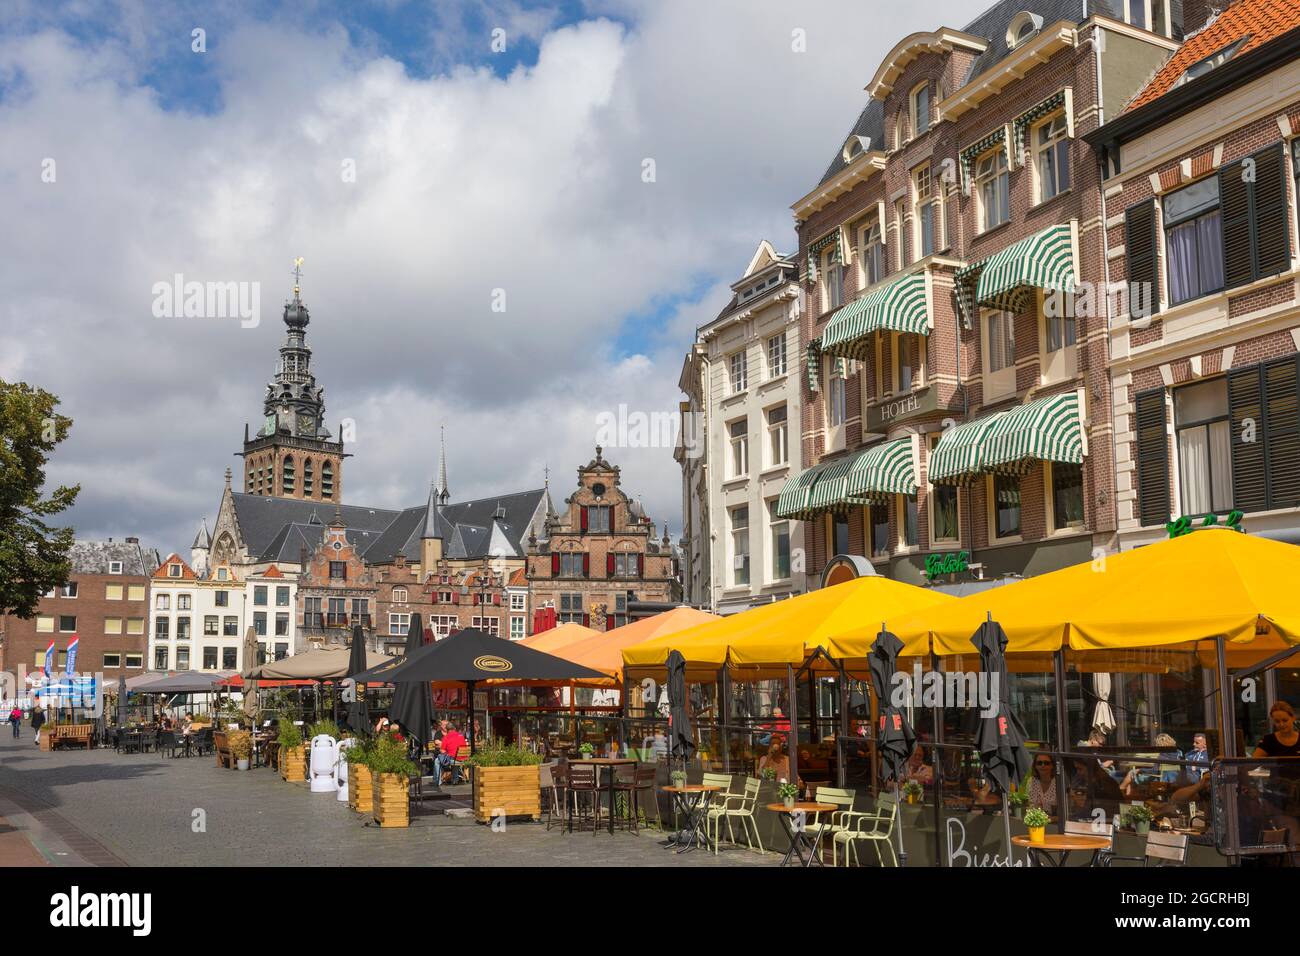 Vista al interior de la ciudad de Nijmegen con terrazas y antiguos edificios históricos Foto de stock